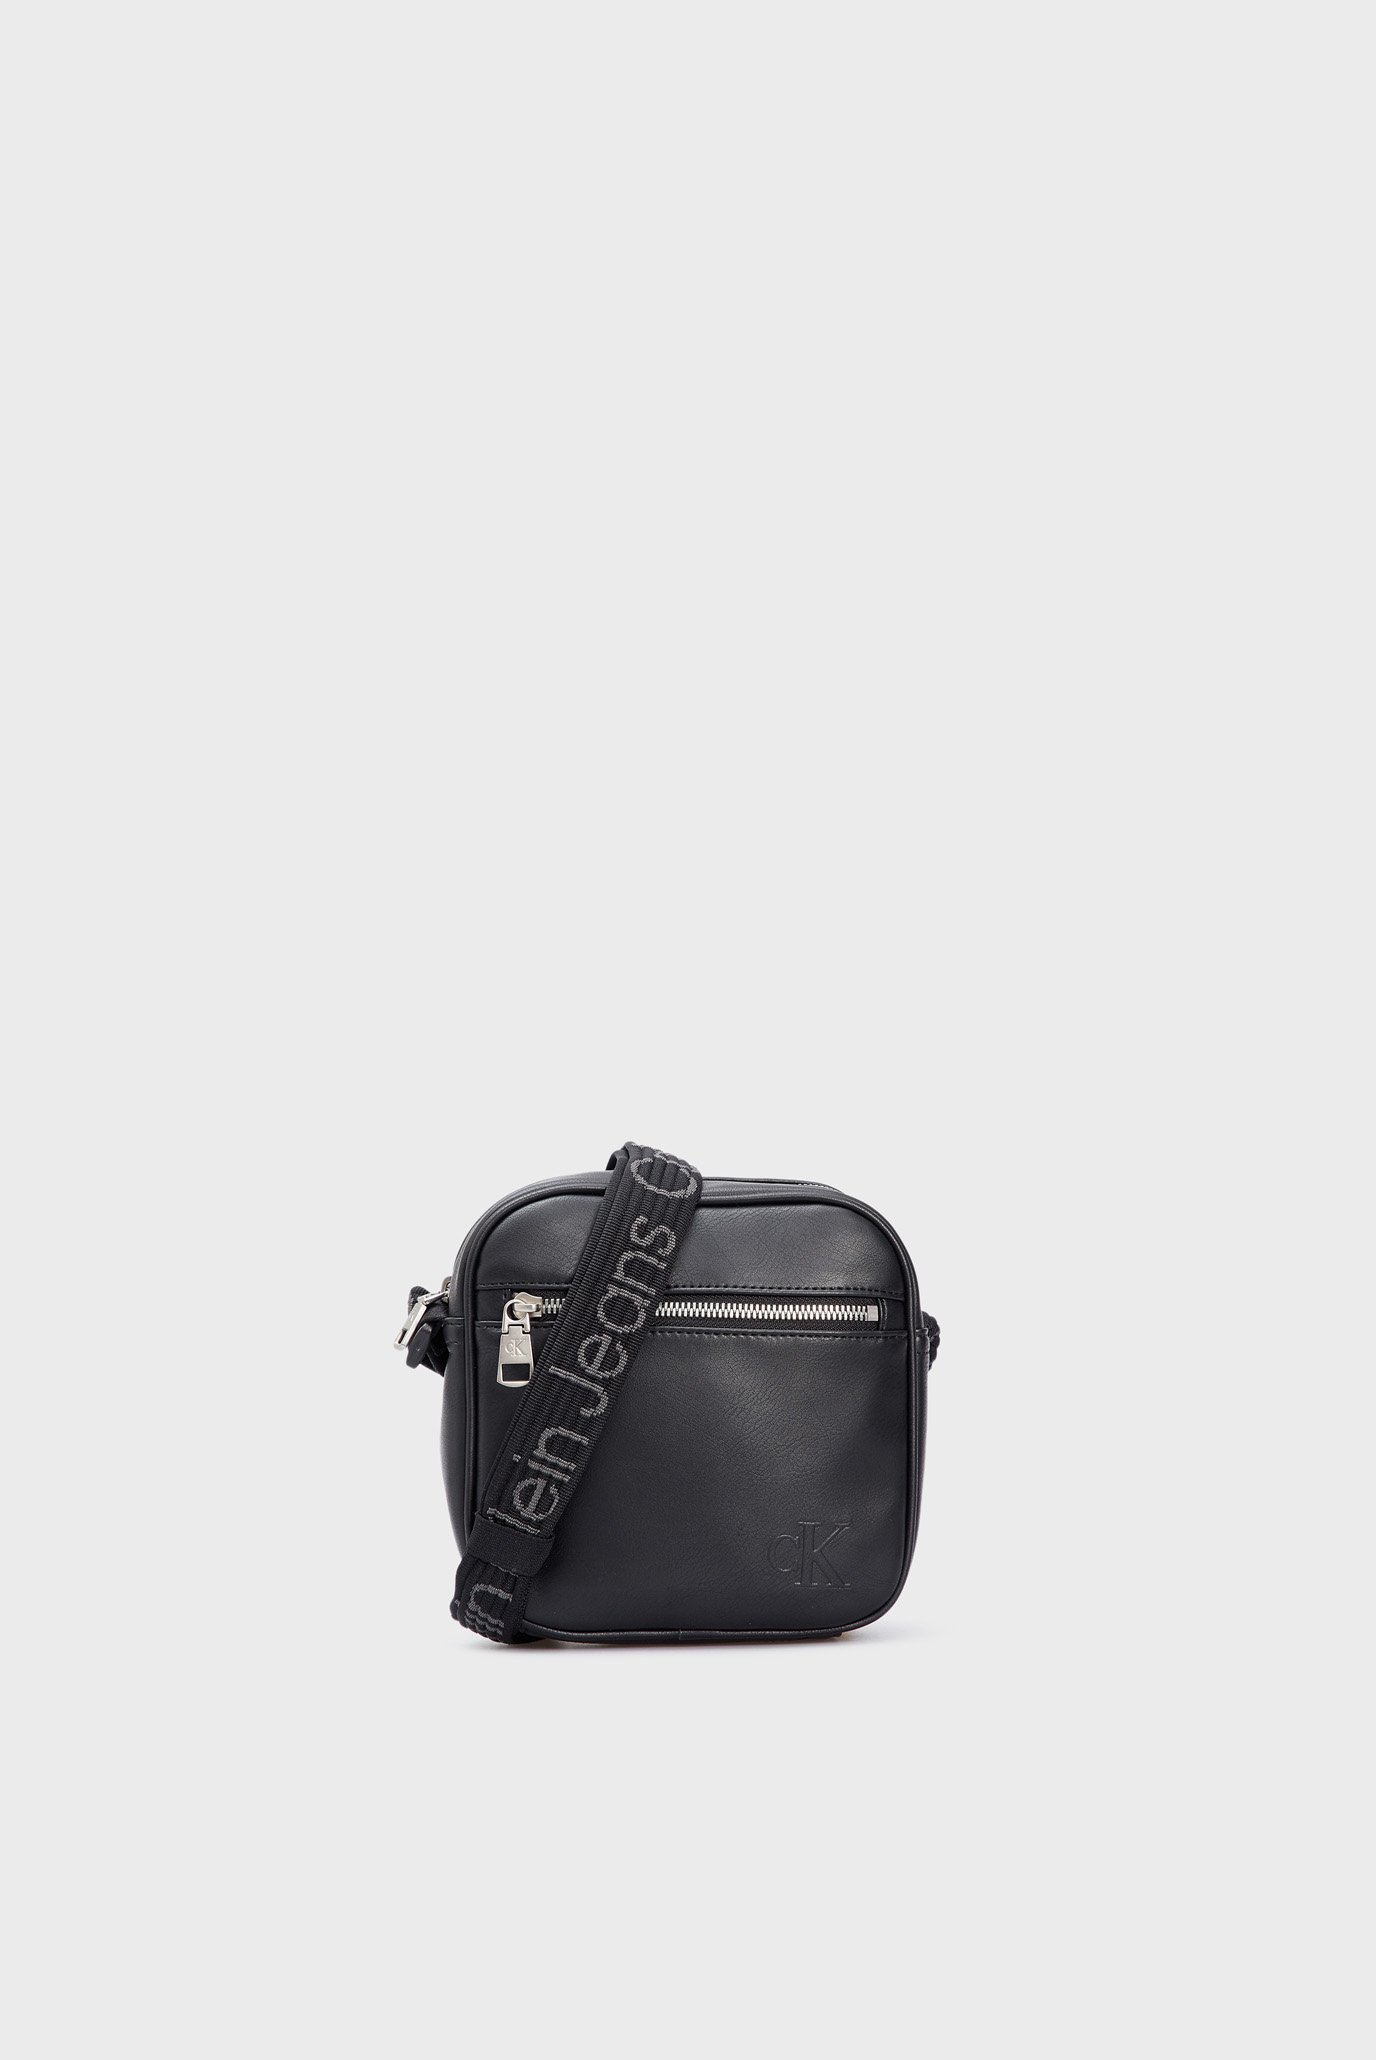 Мужская черная сумка ULTRALIGHT SQ CAMERA BAG18 PU 1